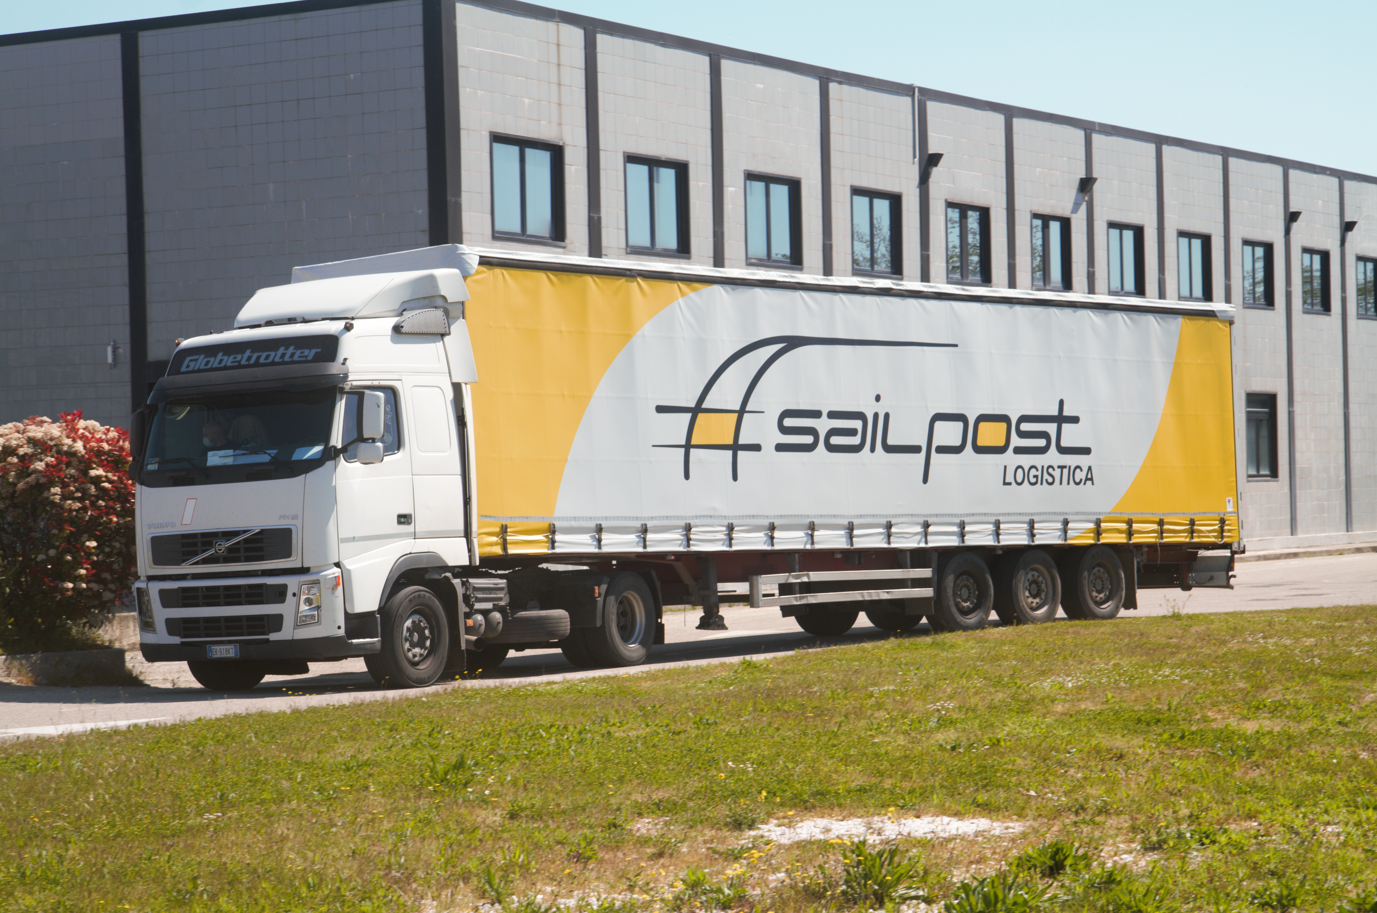 Sailpost chiude il 2022 con un fatturato di 65 milioni di euro: obiettivo 2023 +25%